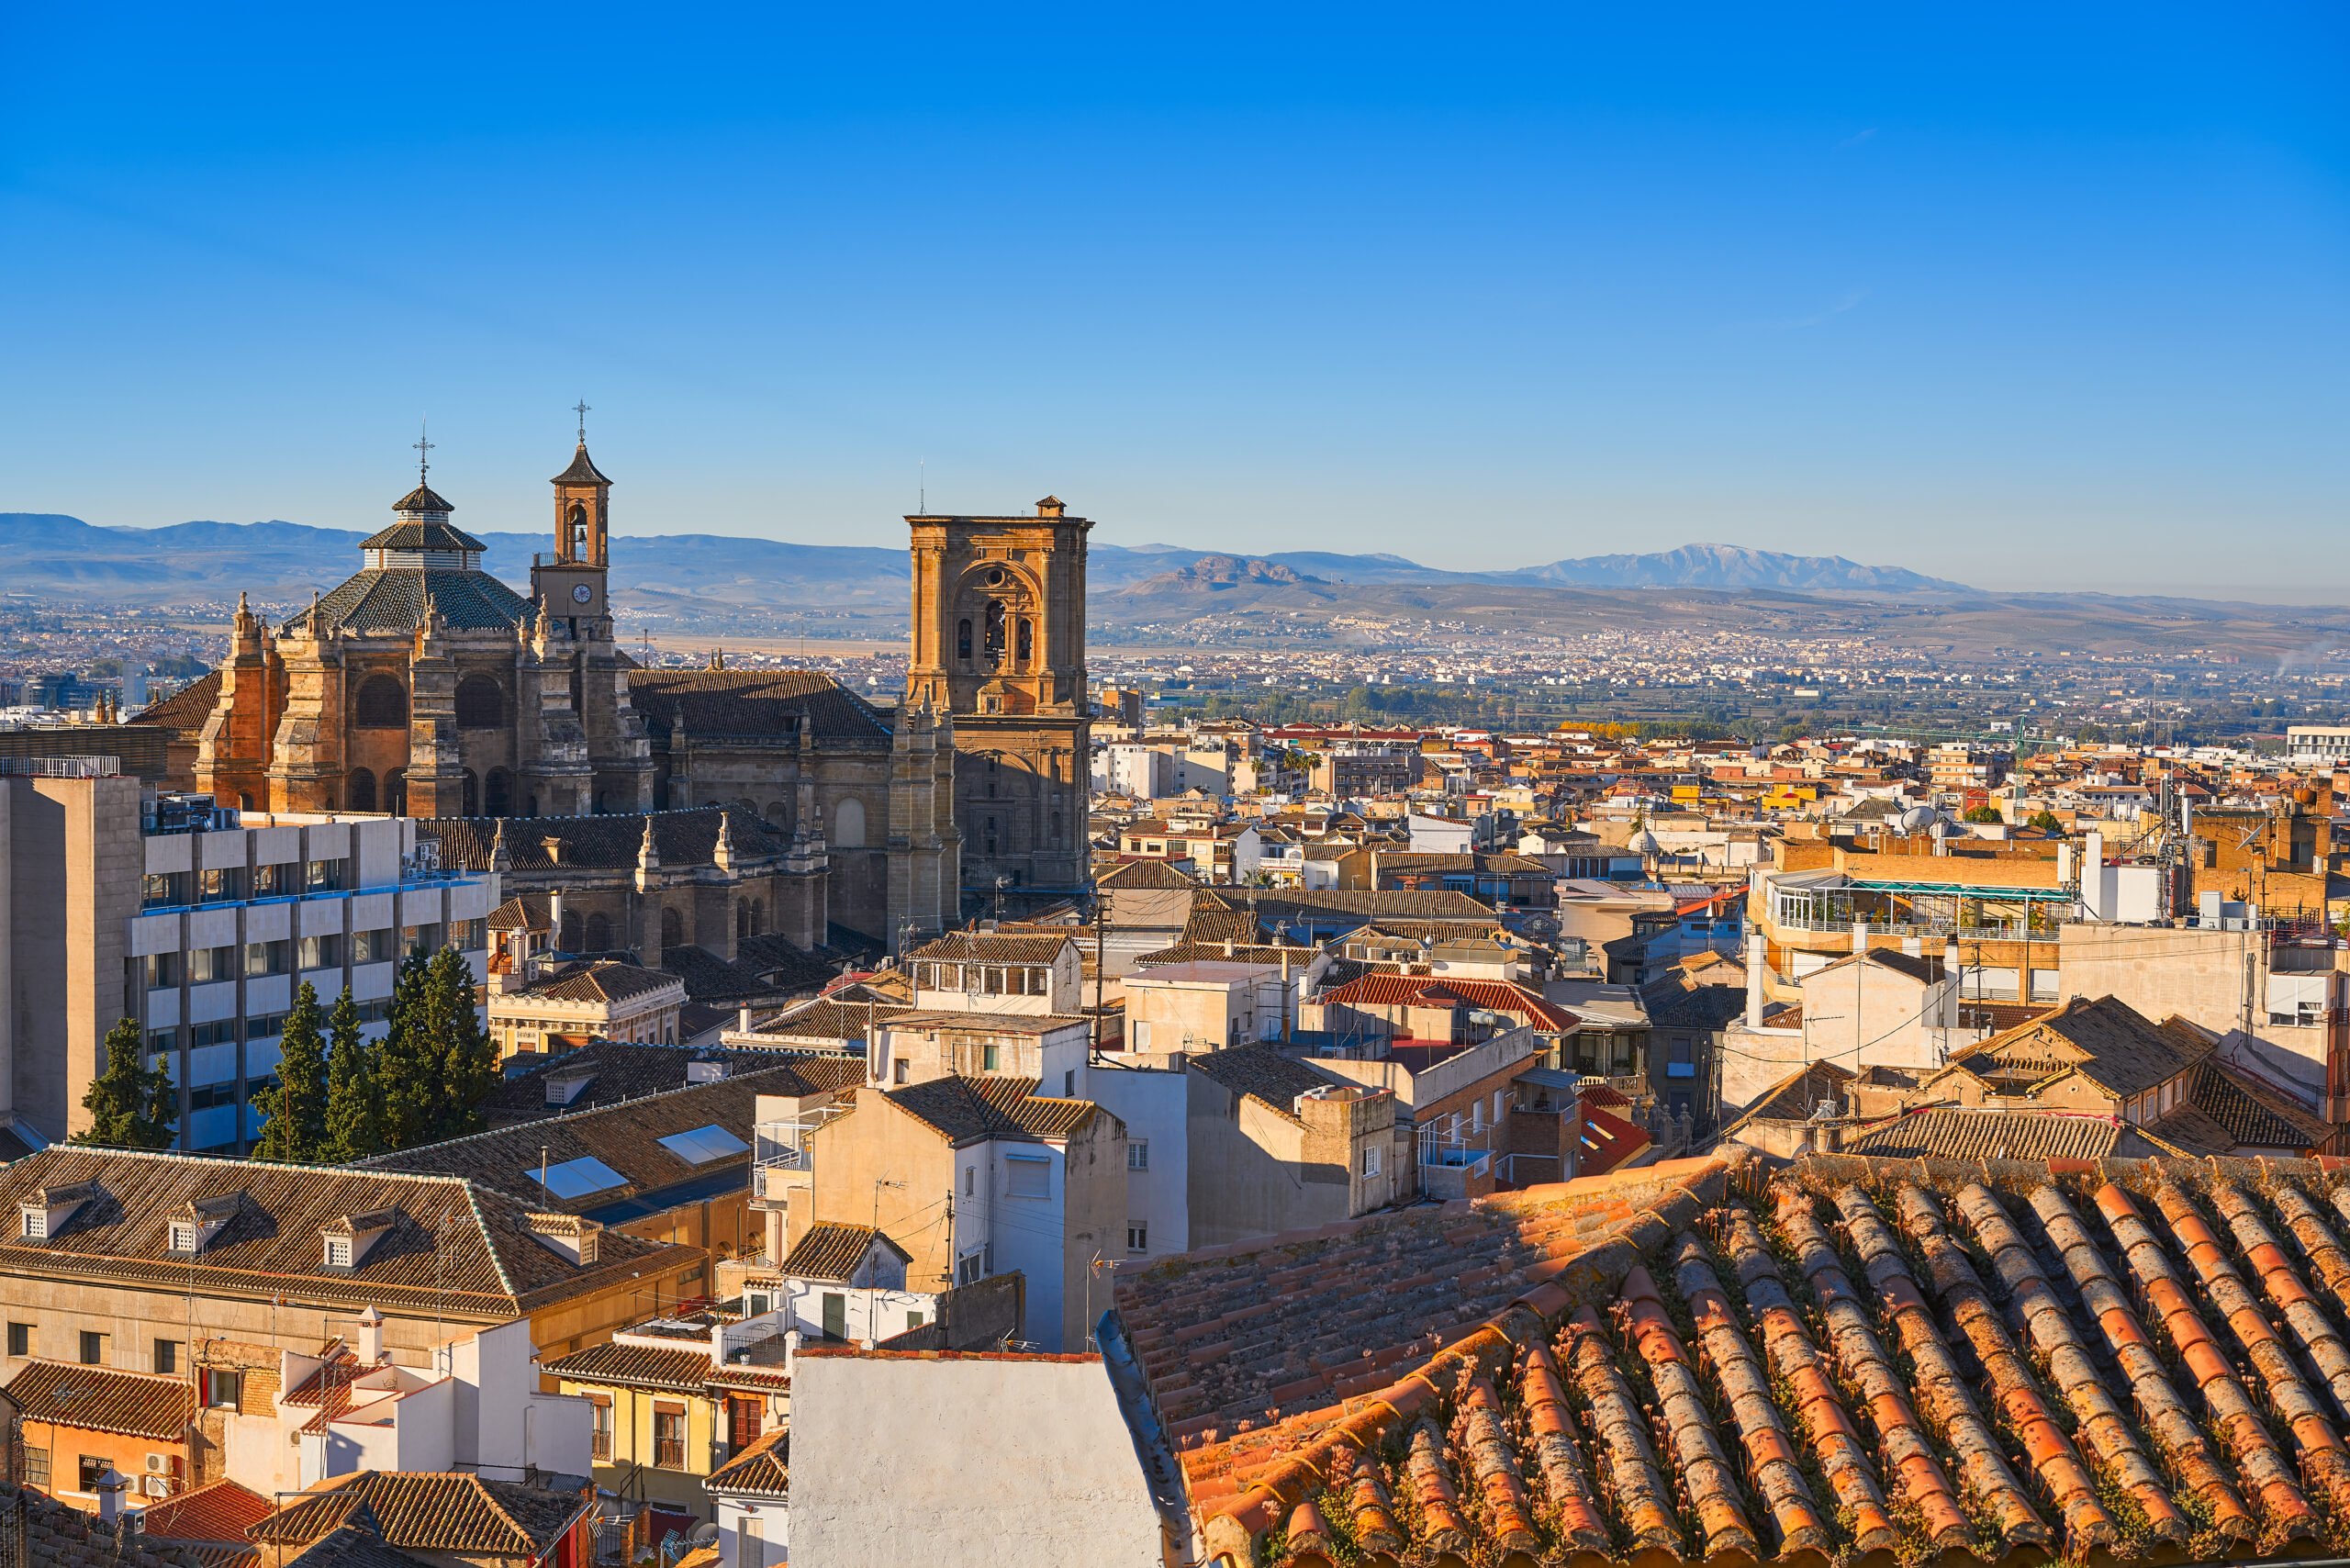 Explore Granada's Old Town On The The Granada Old Town & Albaicin Tapas Tour